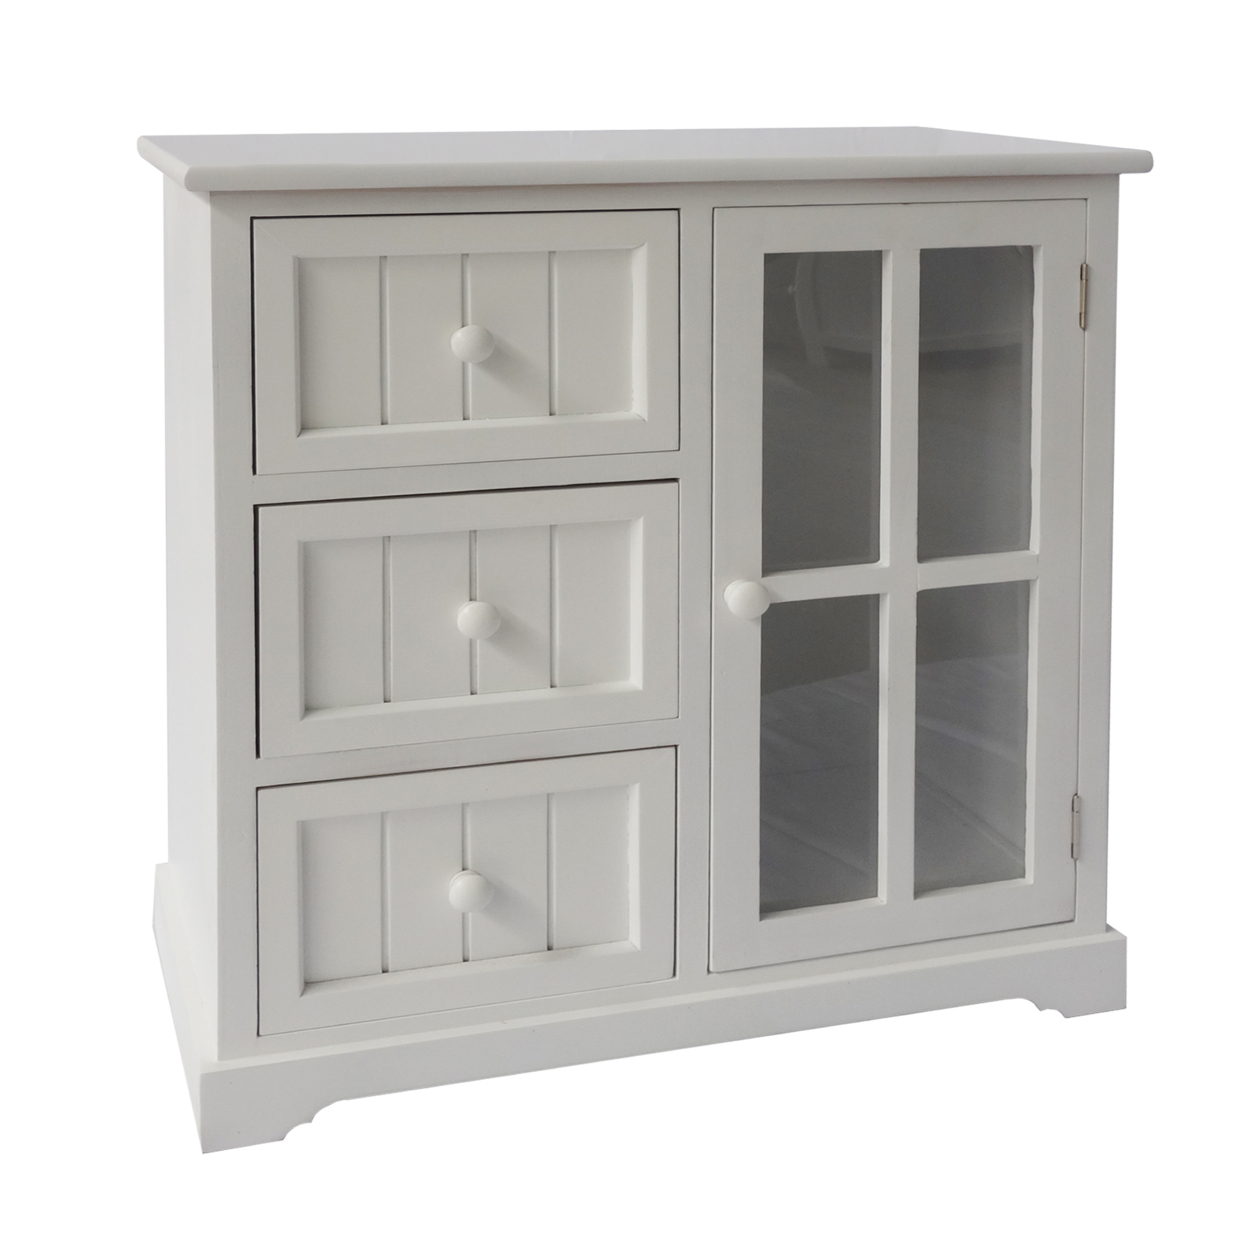 24 Inch Paulownia Wood Accent Cabinet, 3 Drawers, 1 Glass Door, White- Saltoro Sherpi